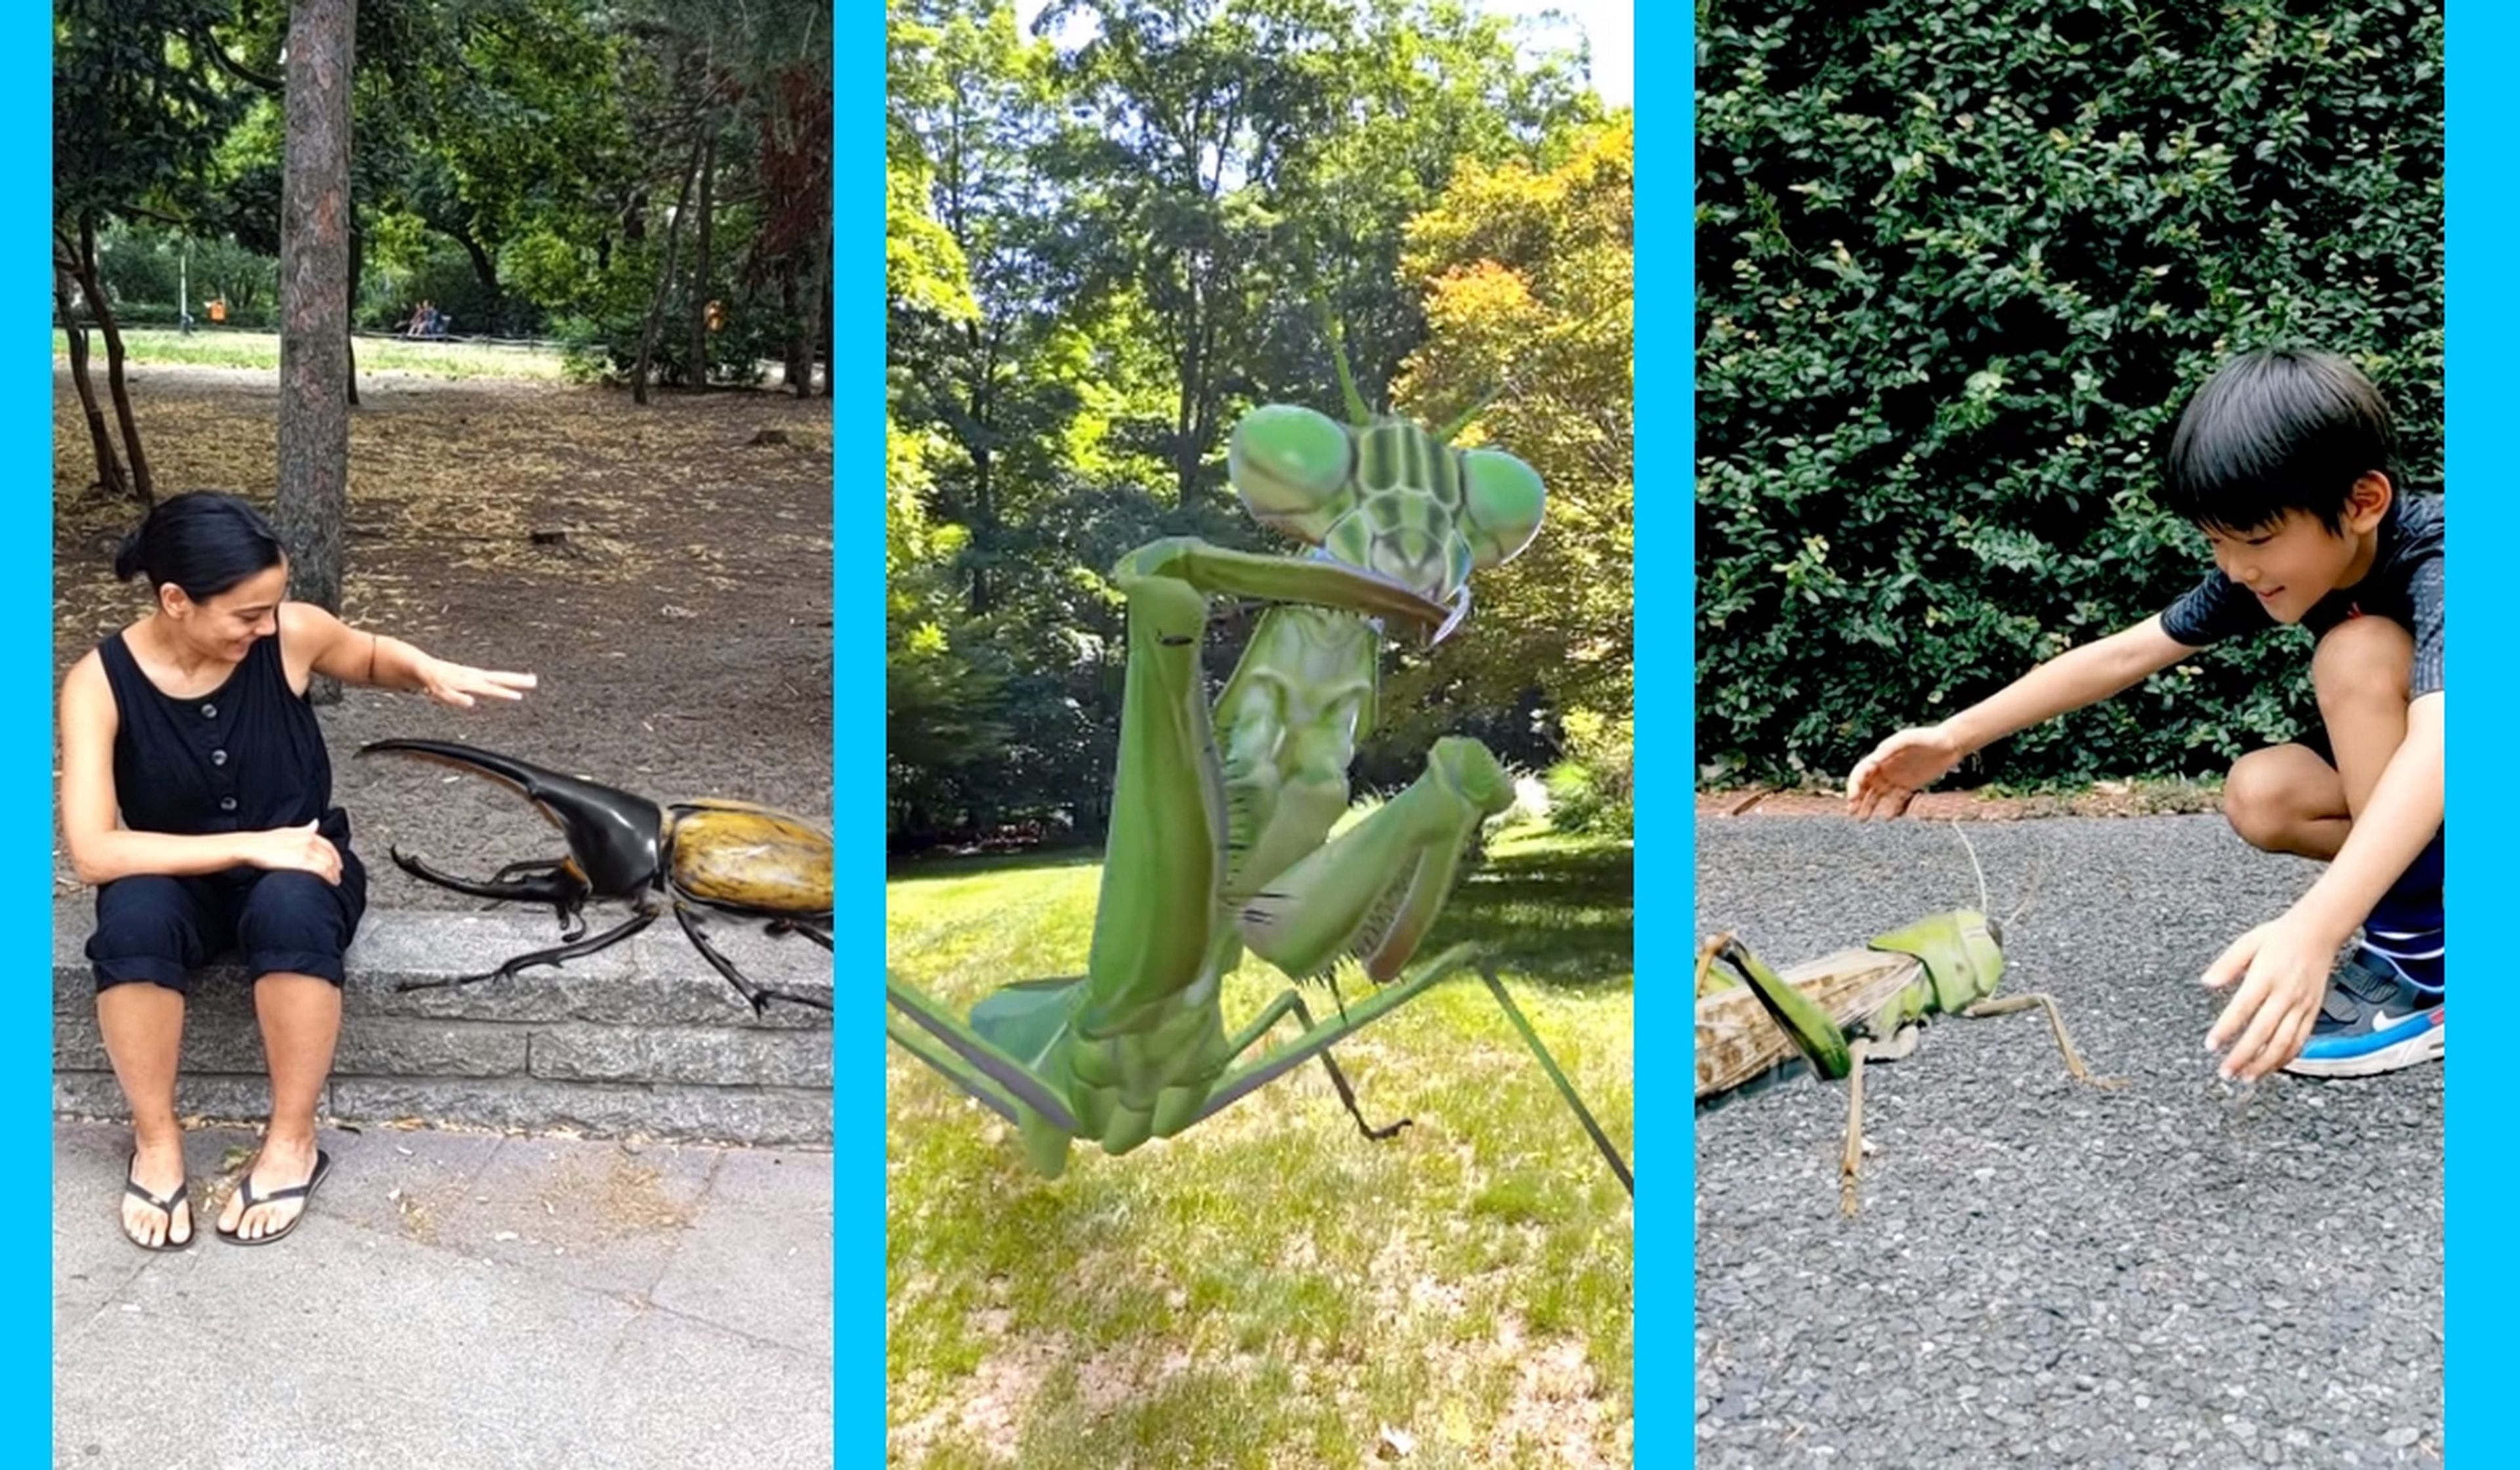 Ya puedes añadir terroríficos insectos en 3D en tus vídeos gracias a Google